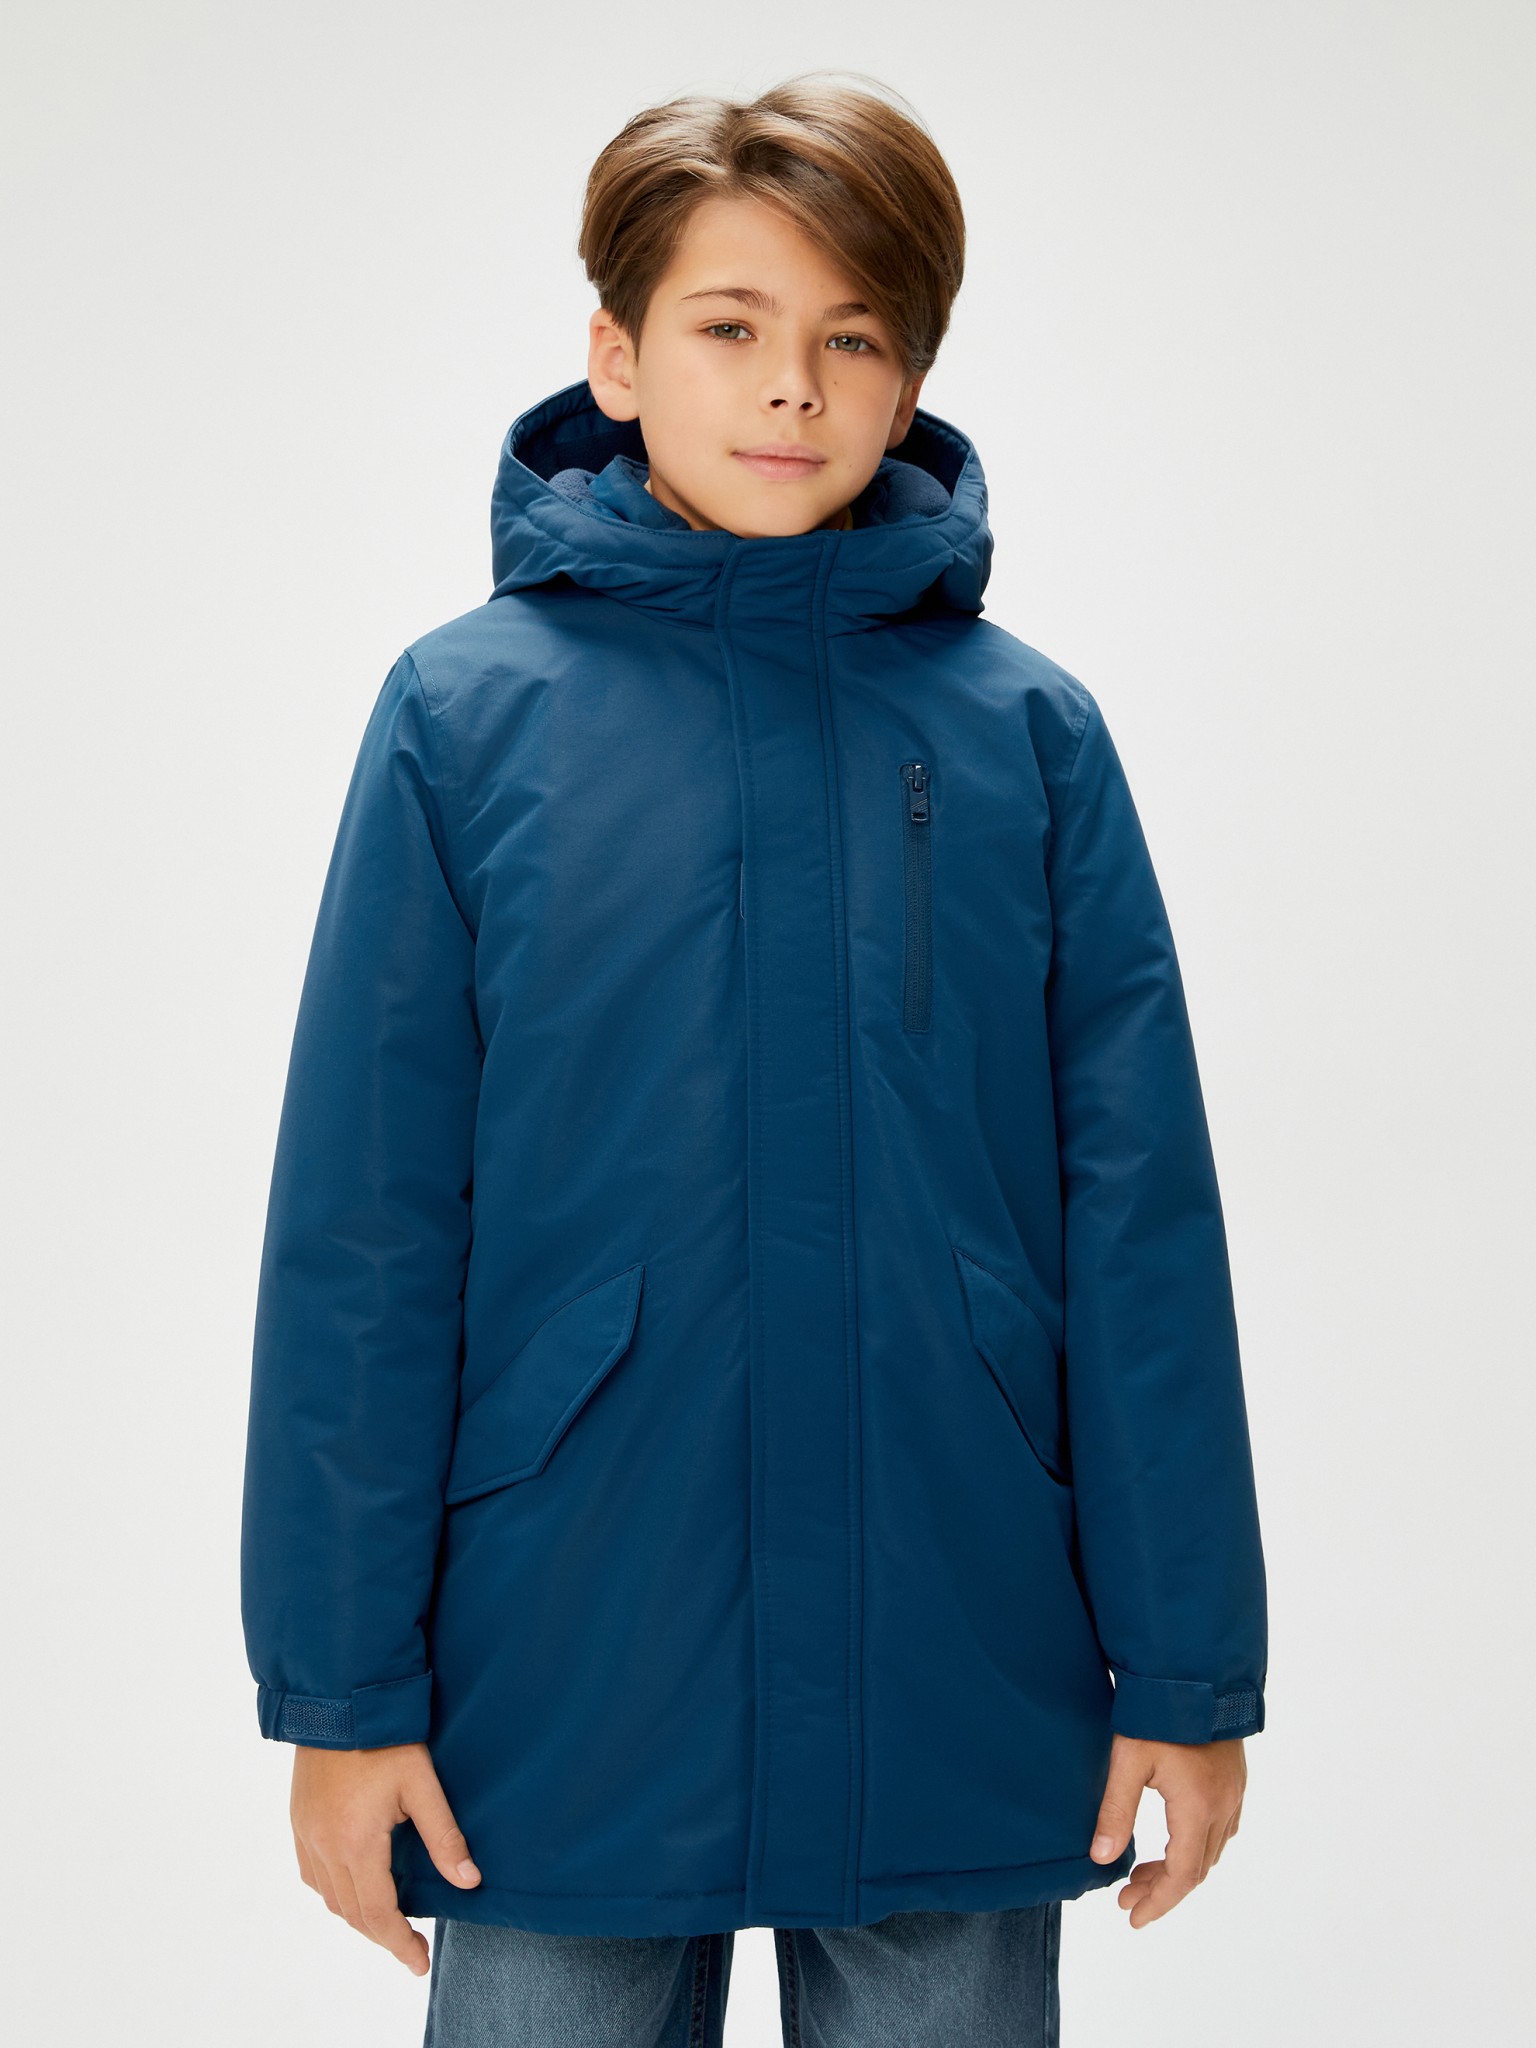 Куртка детская Acoola 20110130294, синий, 146